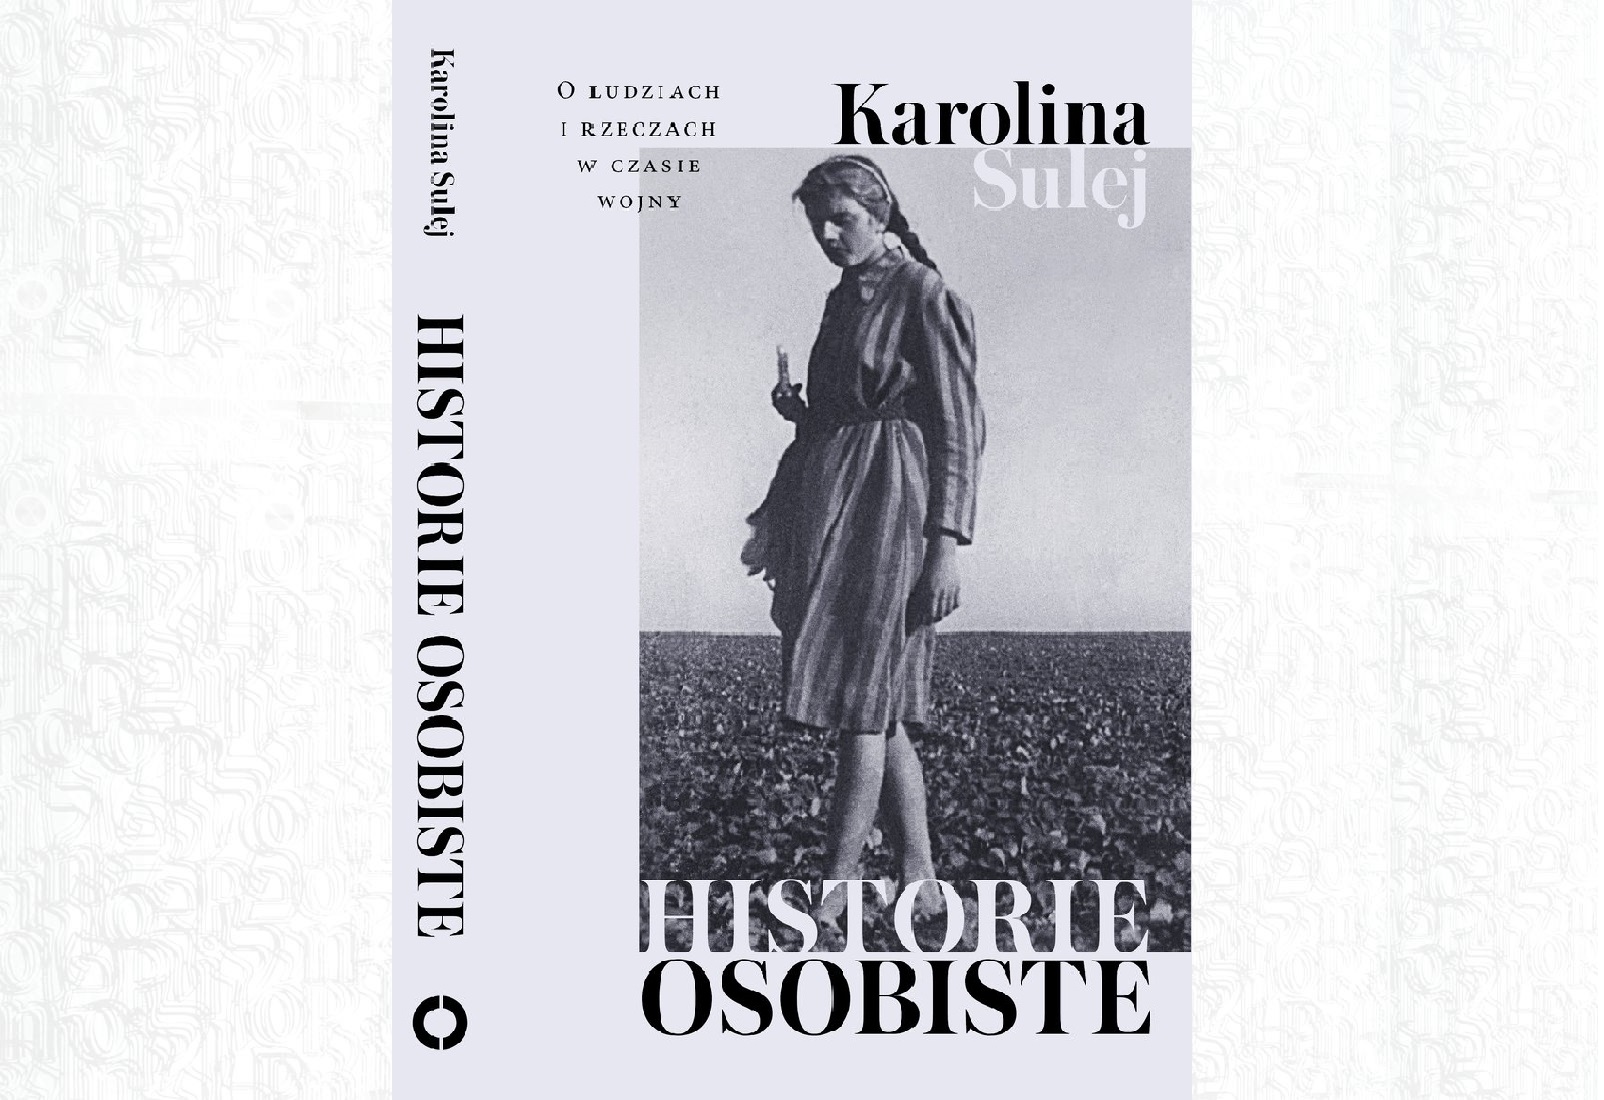 Okładka książki Karoliny Sulej "Historie osobiste". Na czarno-białym zdjęciu kobieta z warkoczem ubrana w sukienkę.